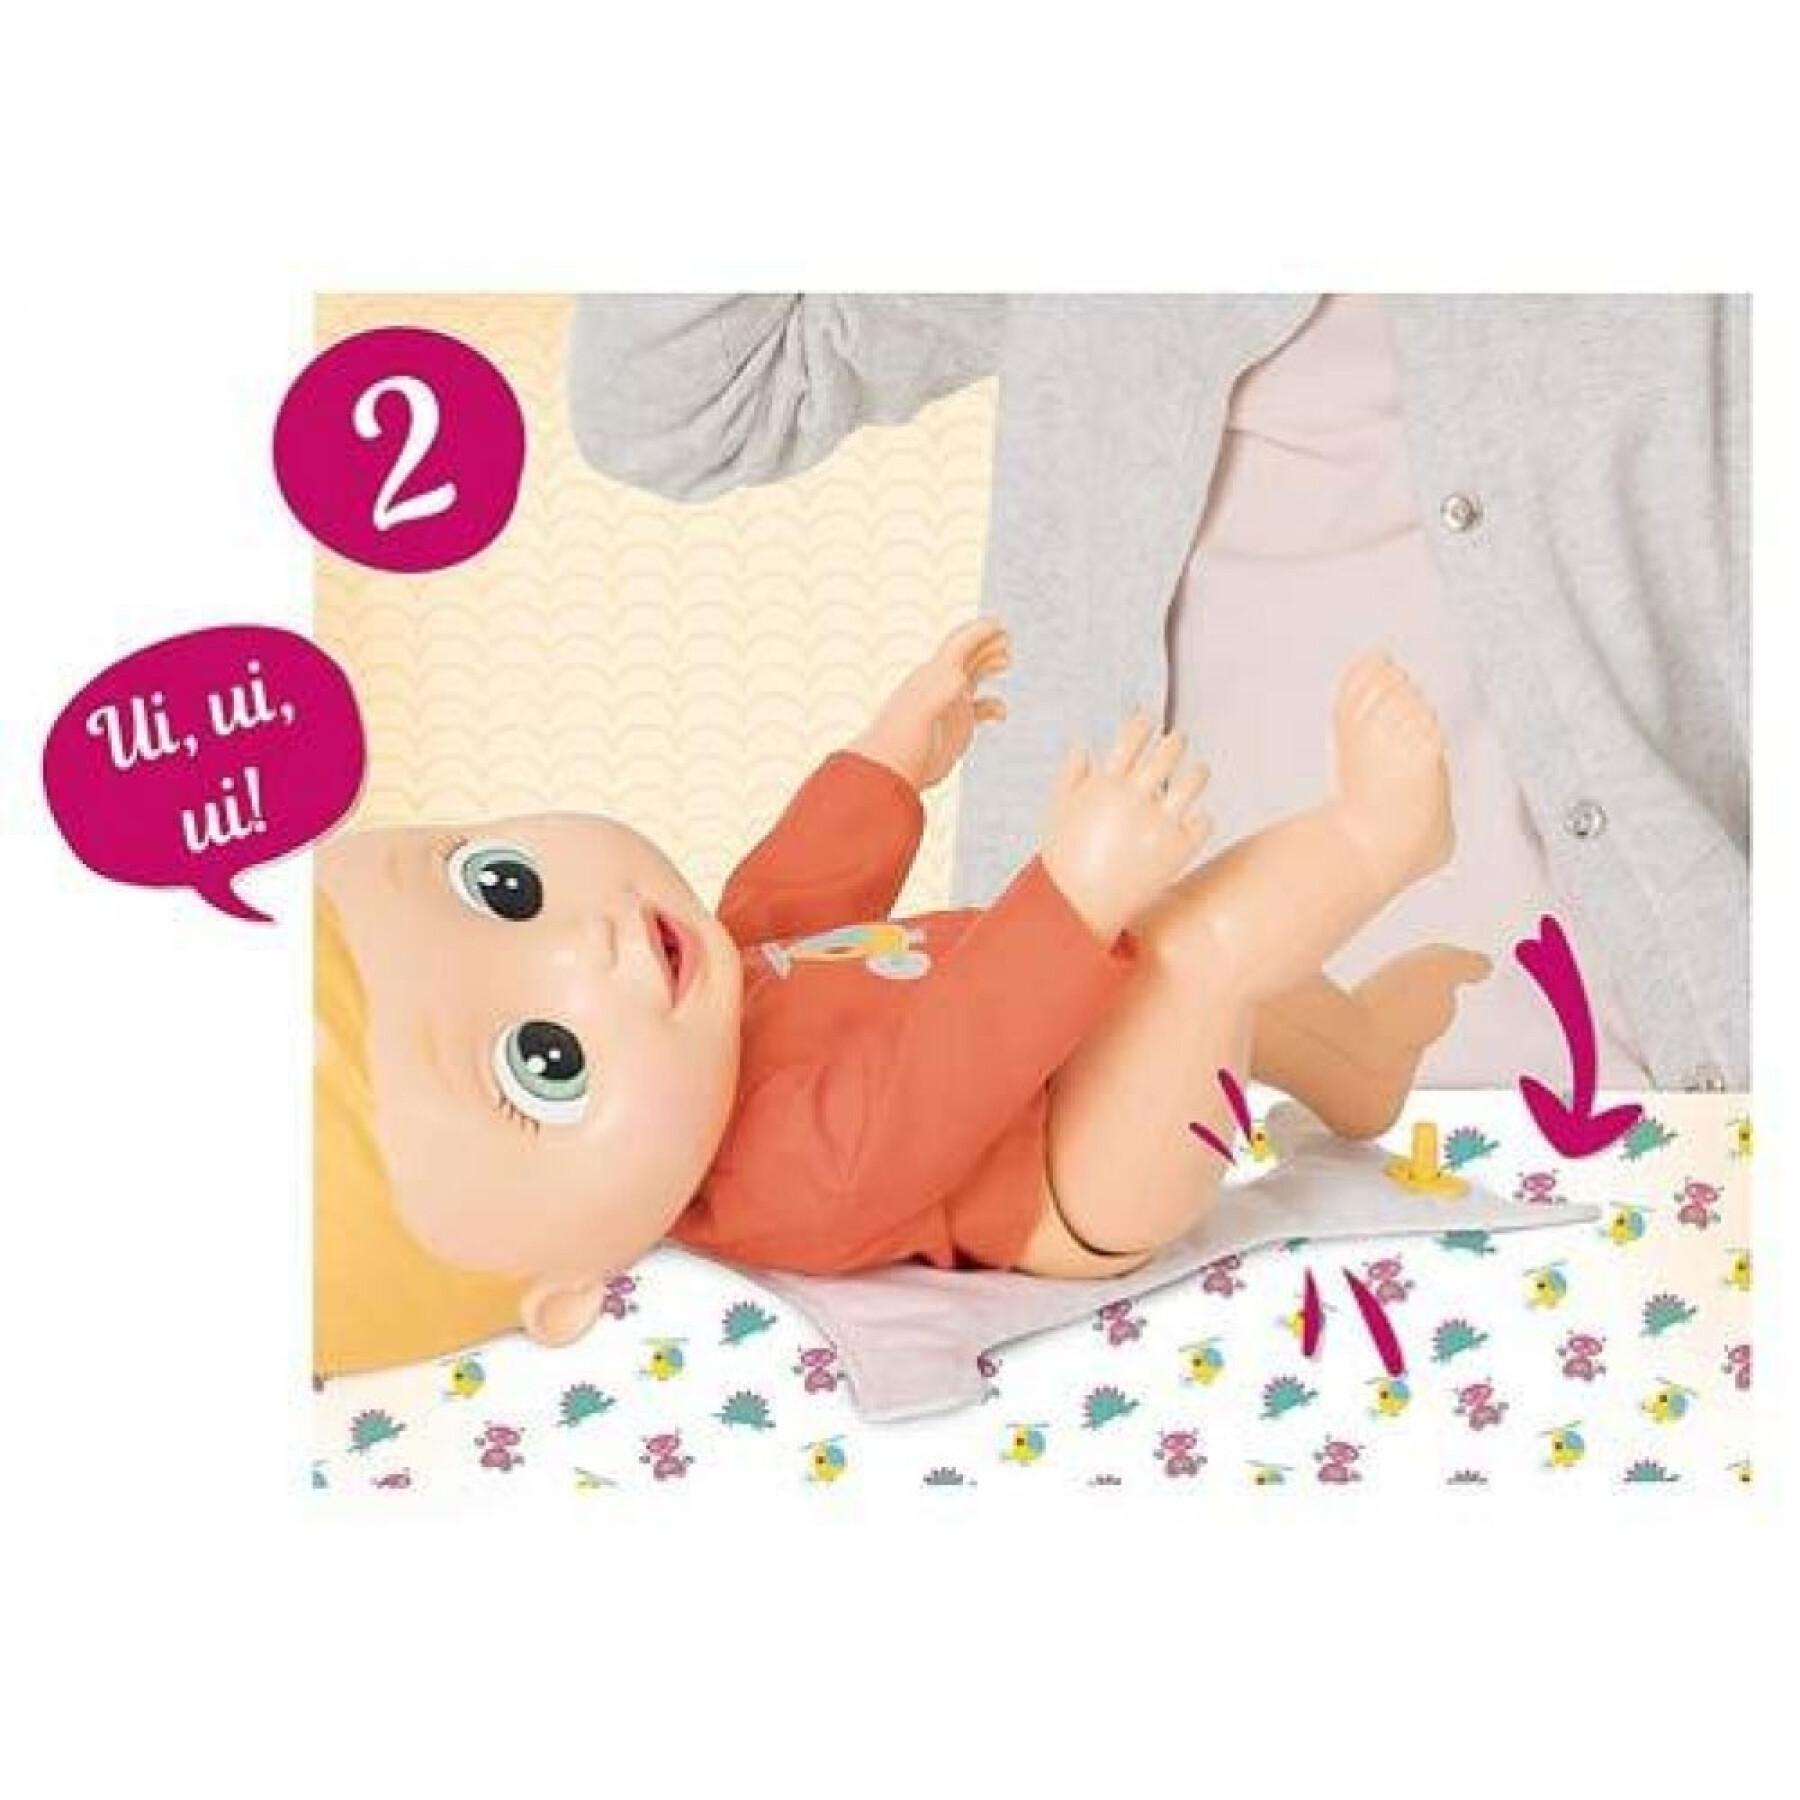 Bambolina che fa la pipì - 3 modelli IMC Toys 30 cm